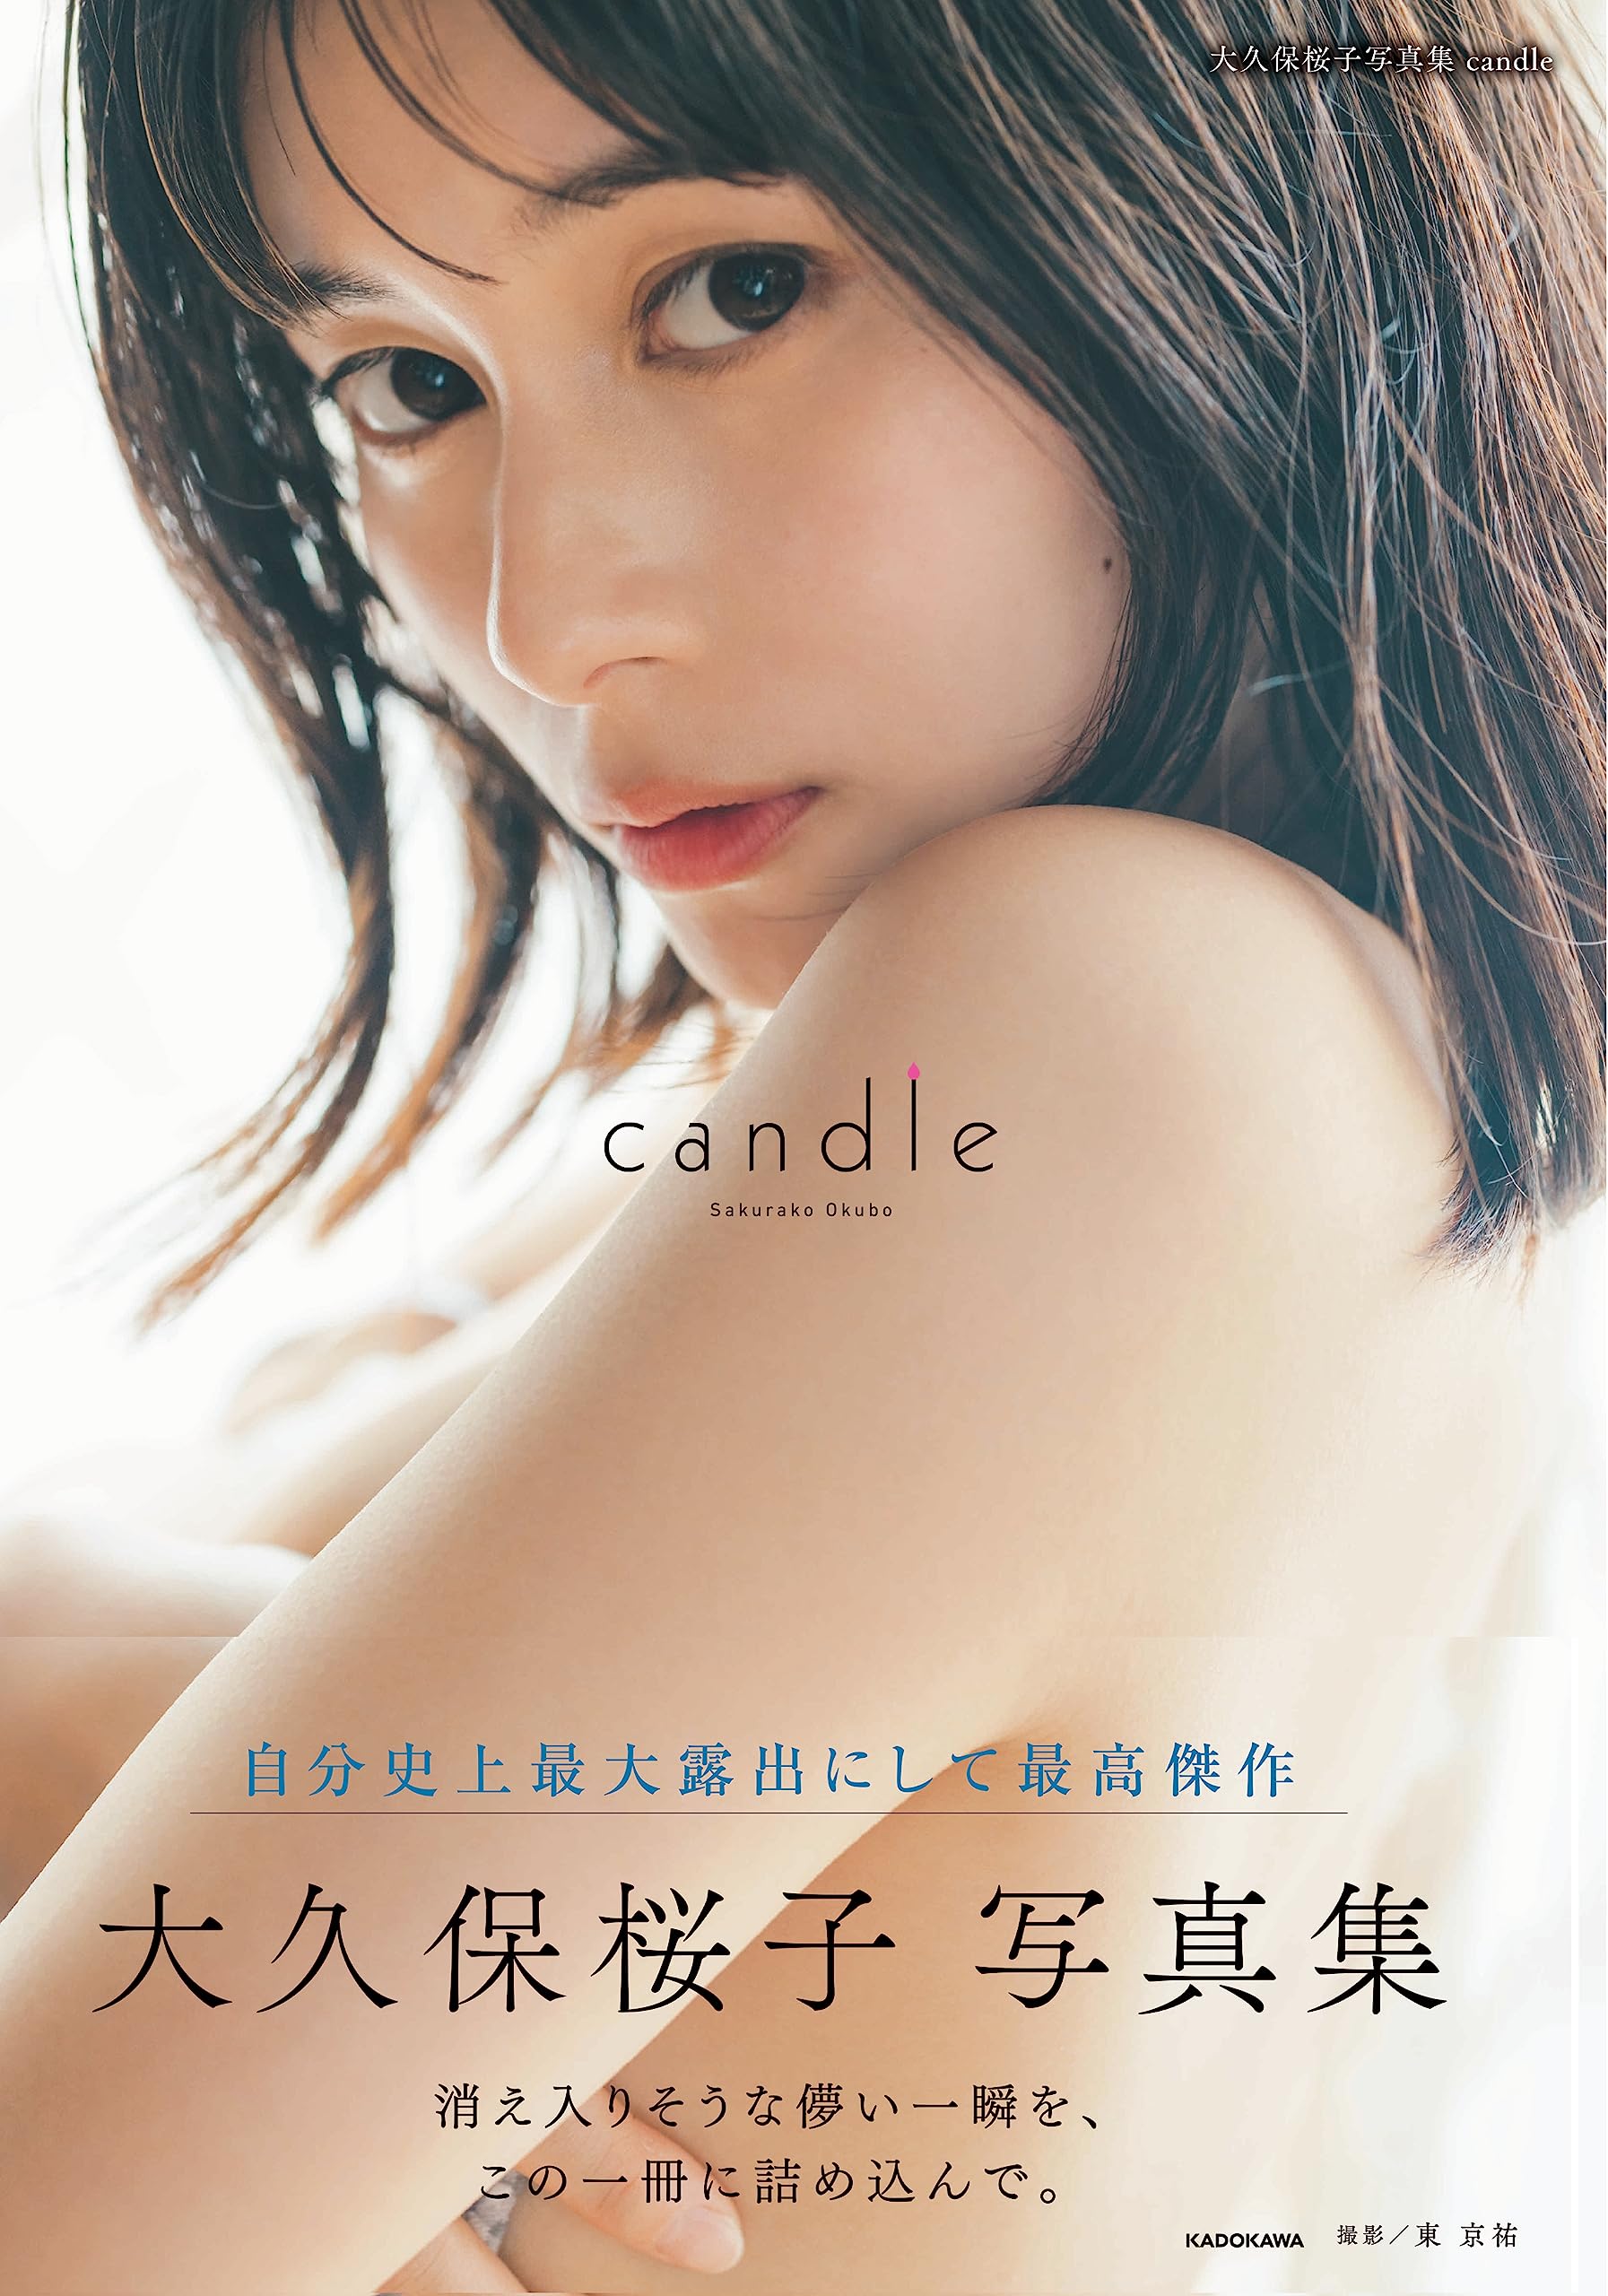 大久保桜子写真集 candle Kindle版のサンプル画像